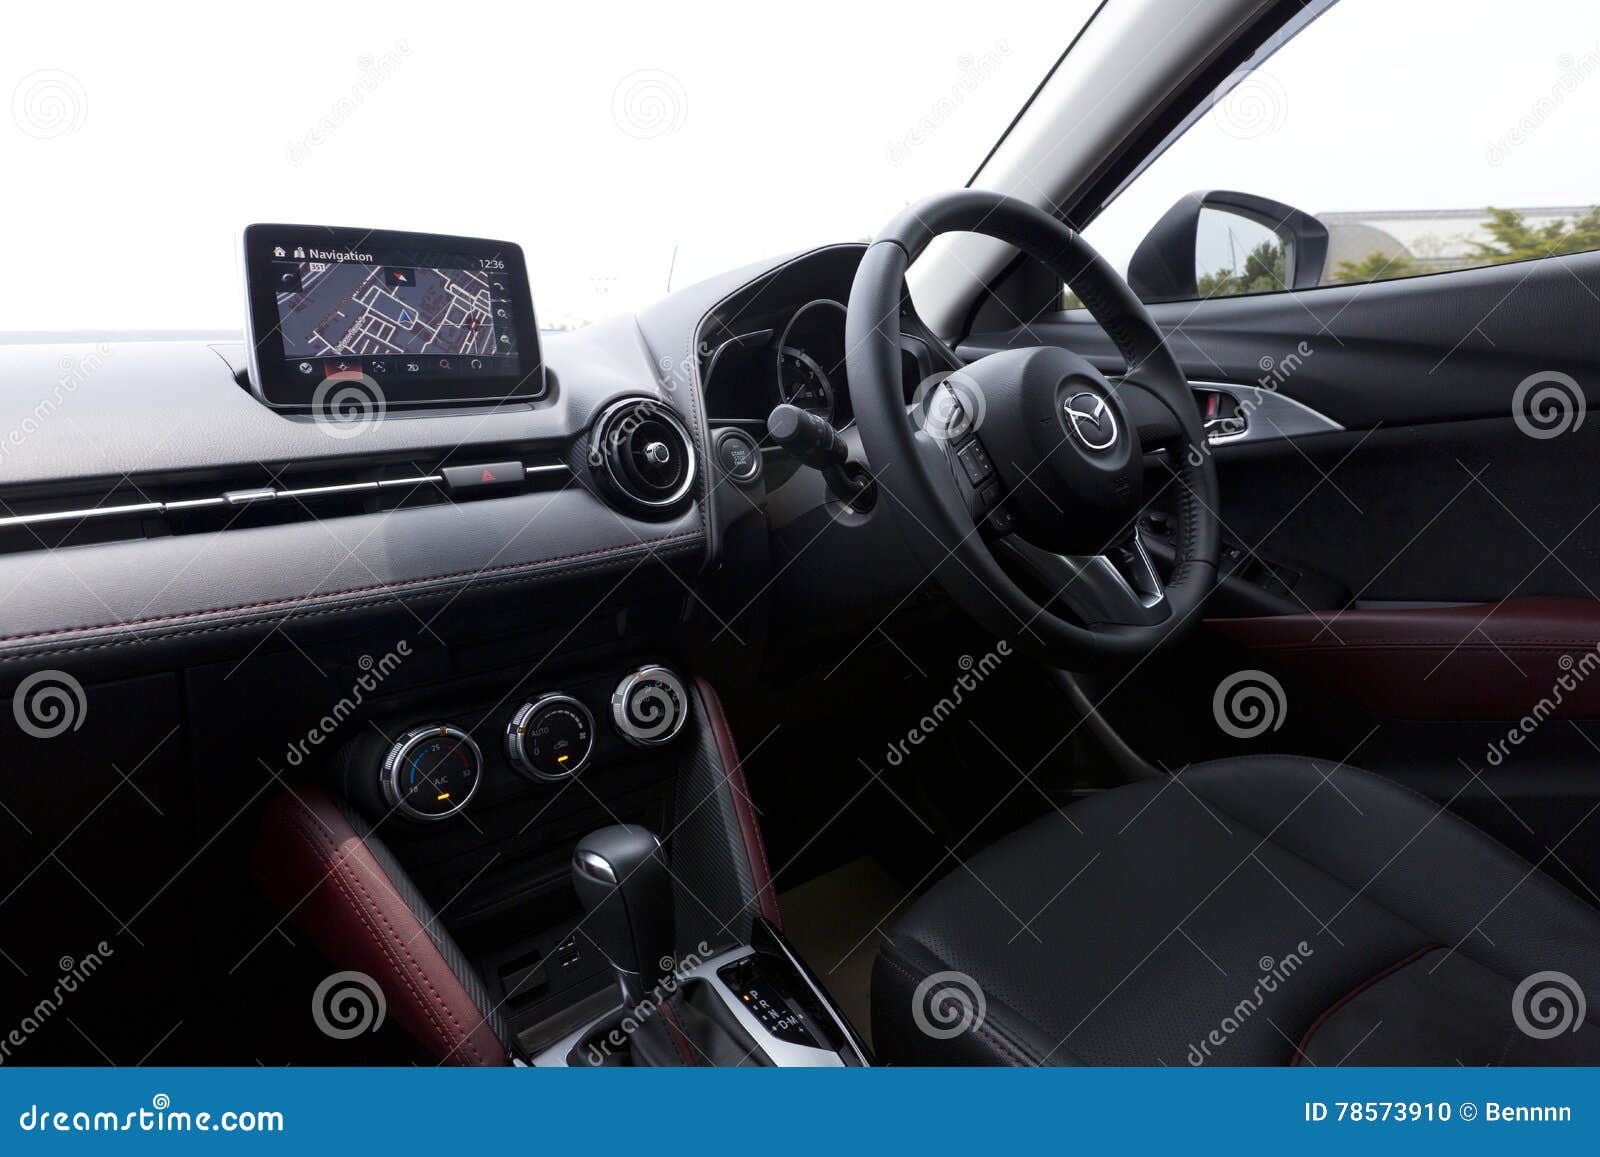 Interior Design Of Mazda Cx 3 Dashboard Editorial Image